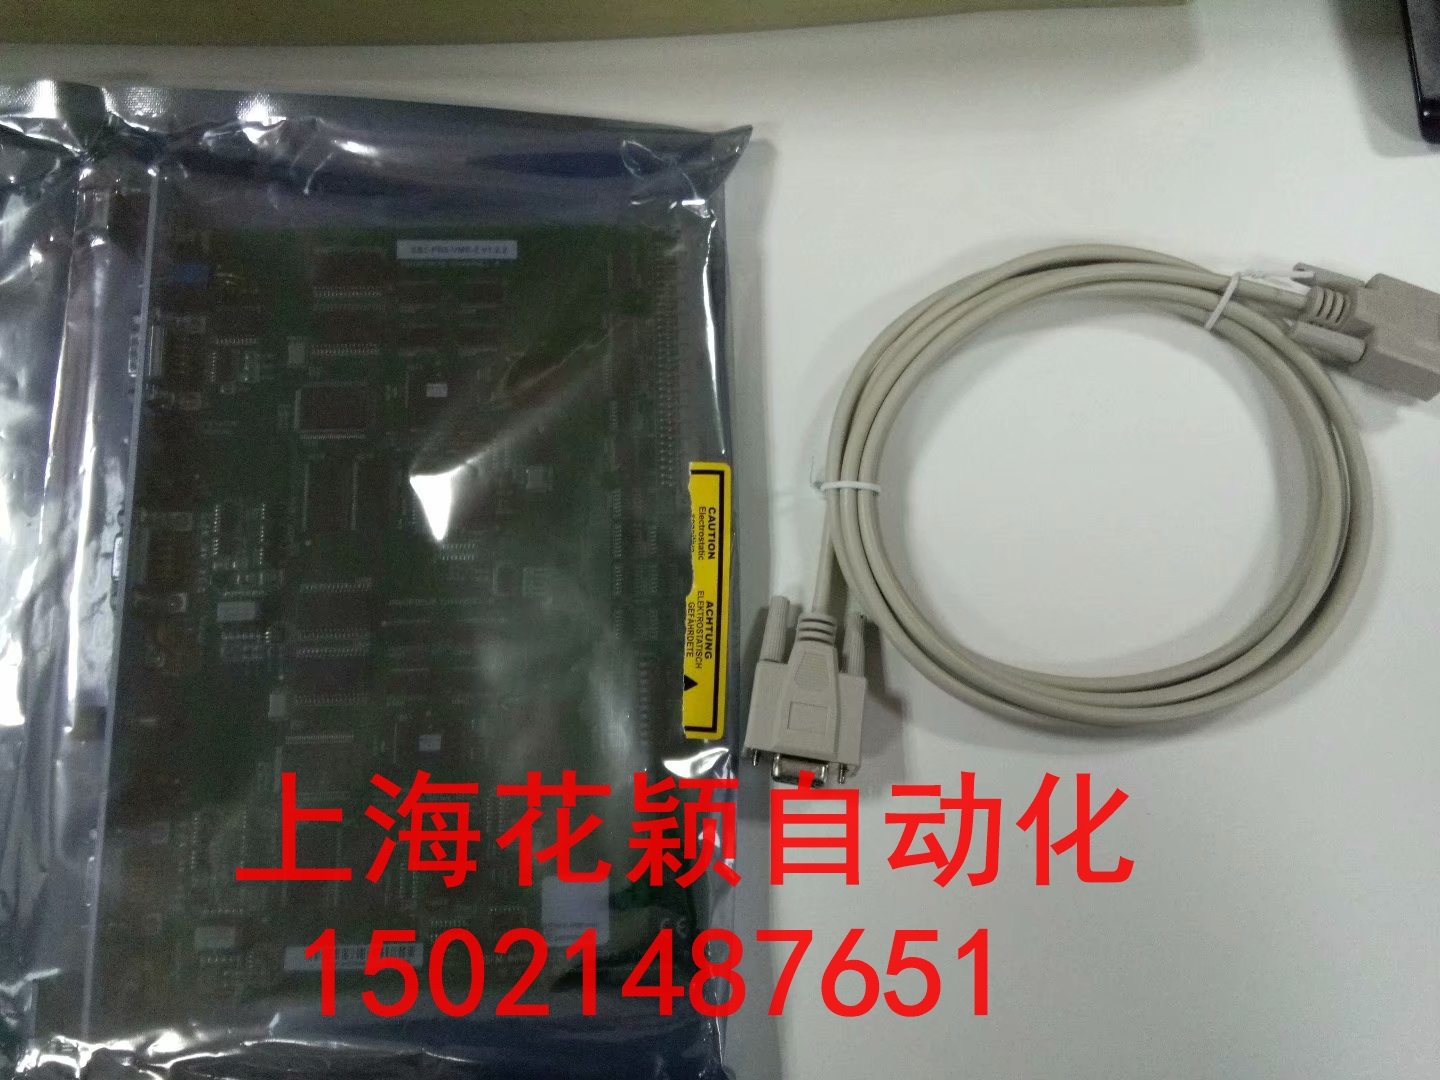 上海静安区代理E+L驱动器FS 4205  Nr.394561